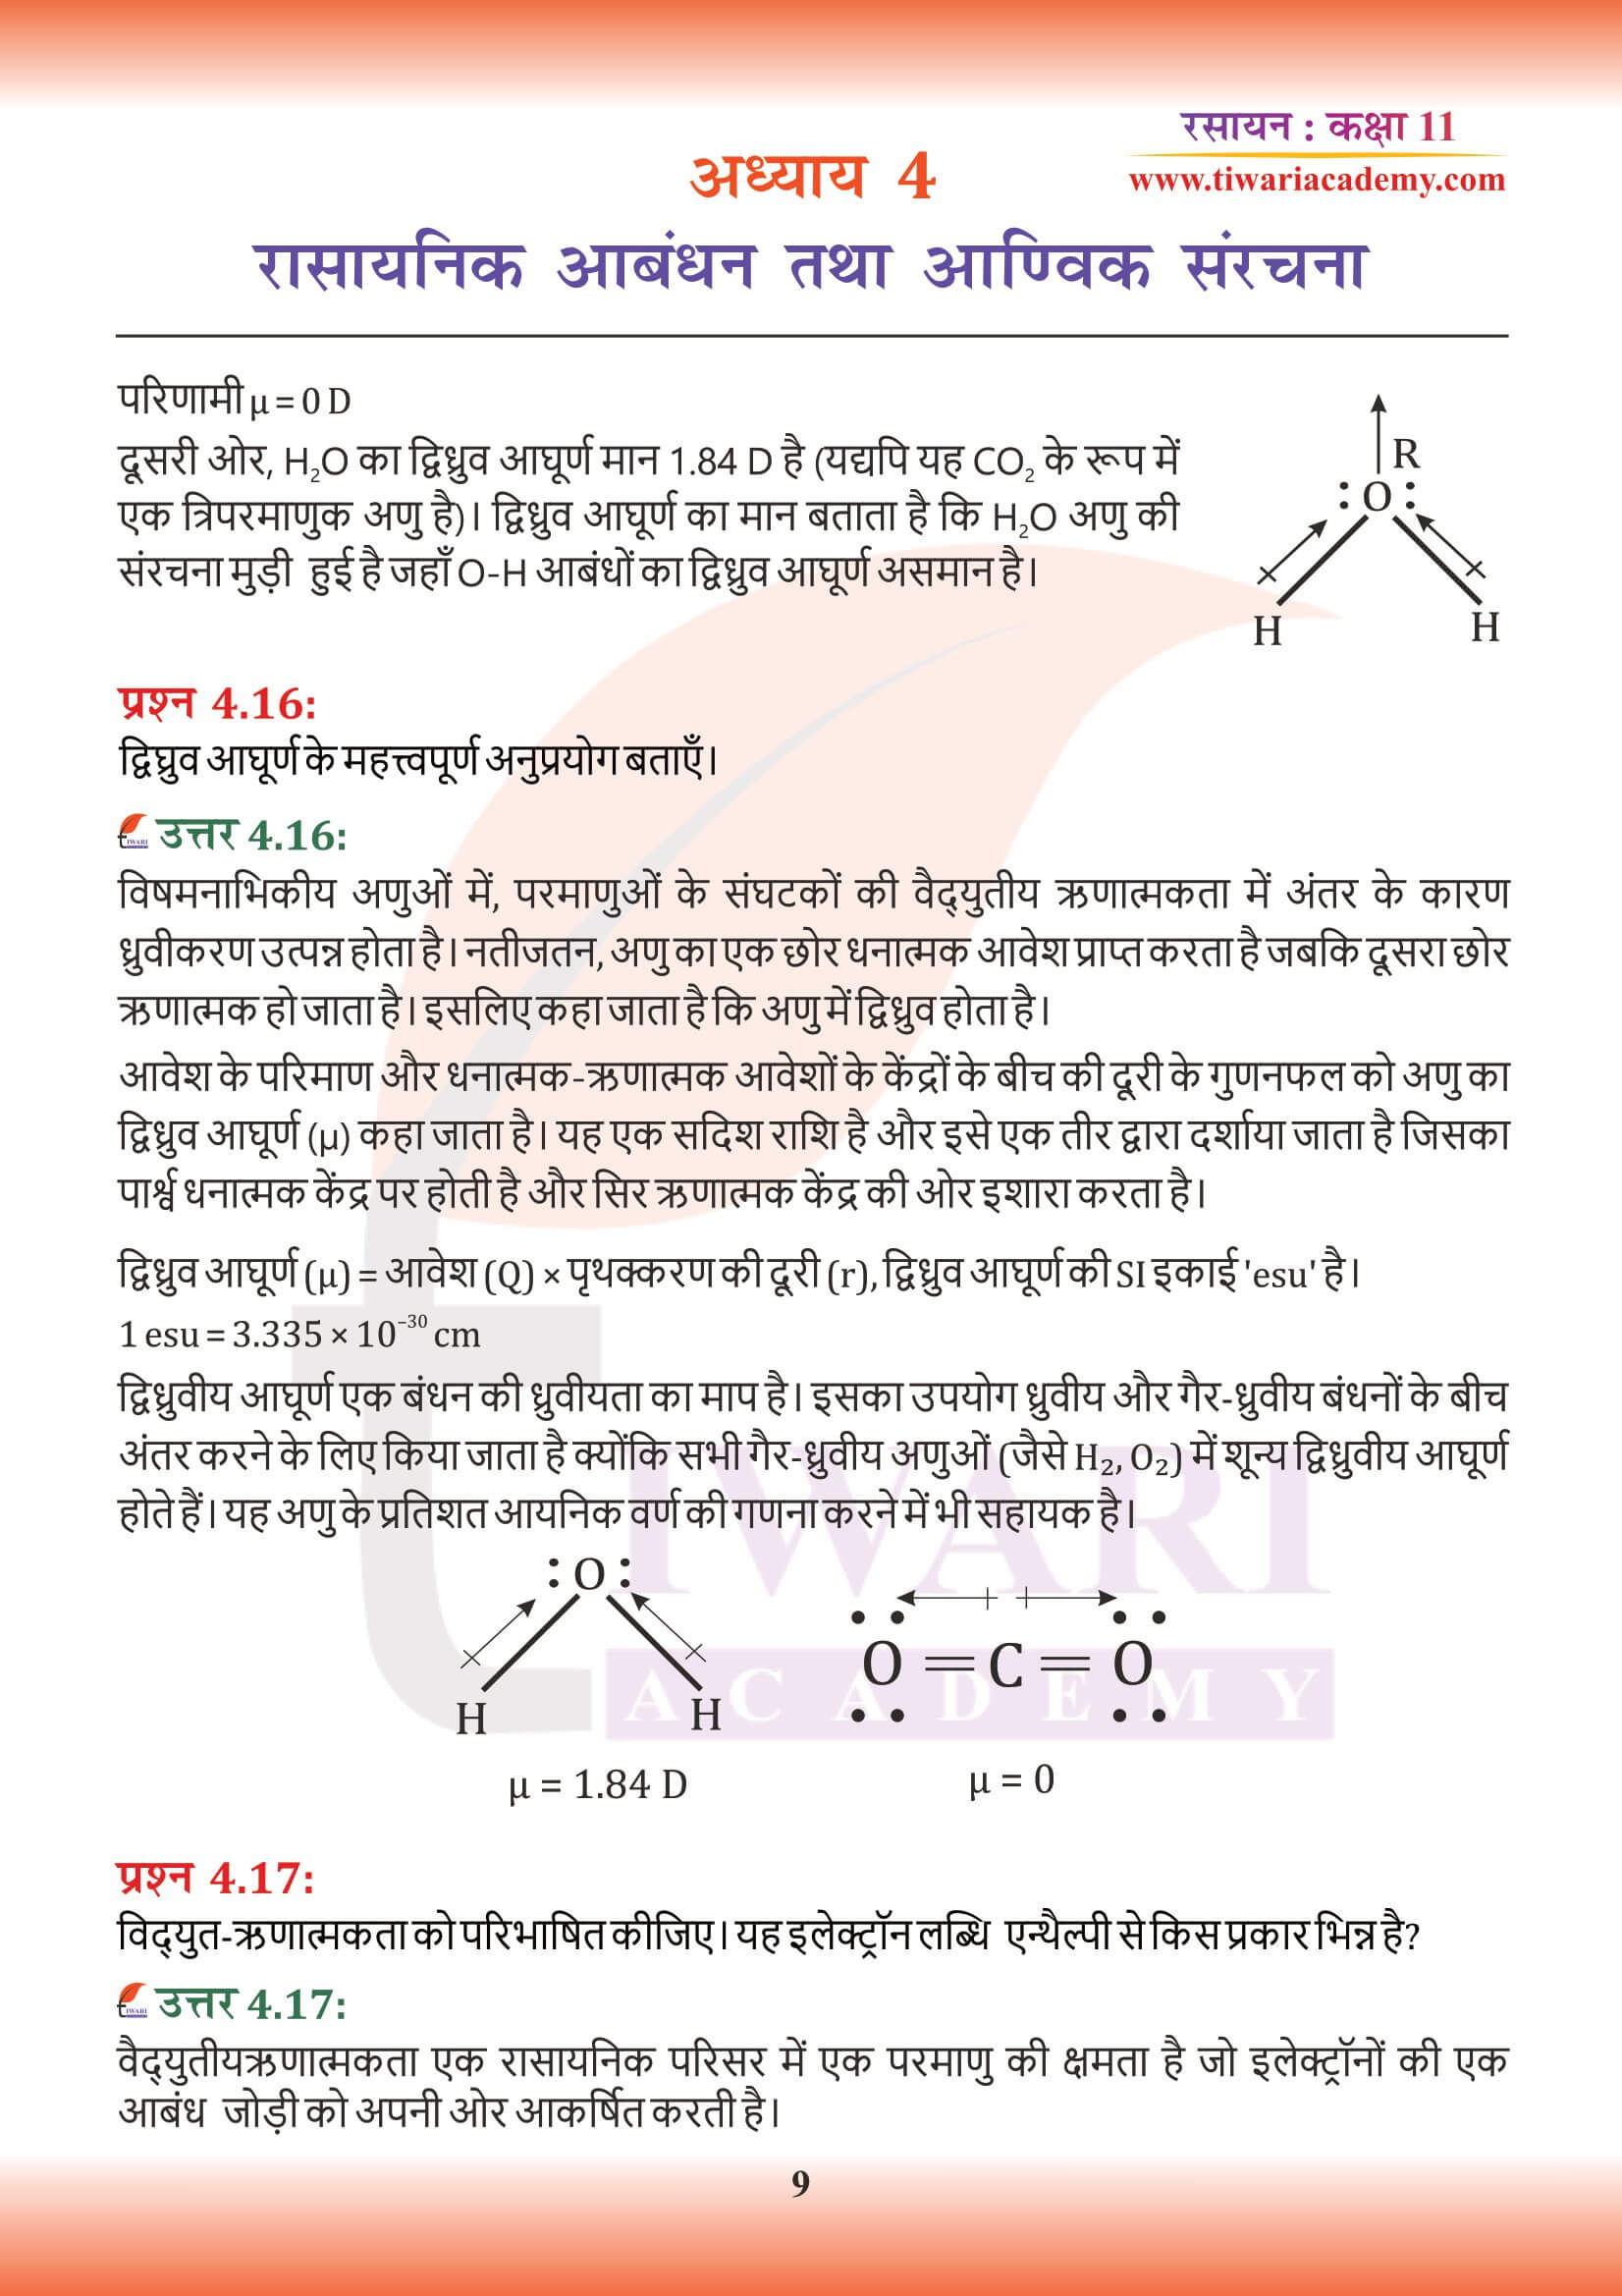 कक्षा 11 रसायन अध्याय 4 हिंदी में हल